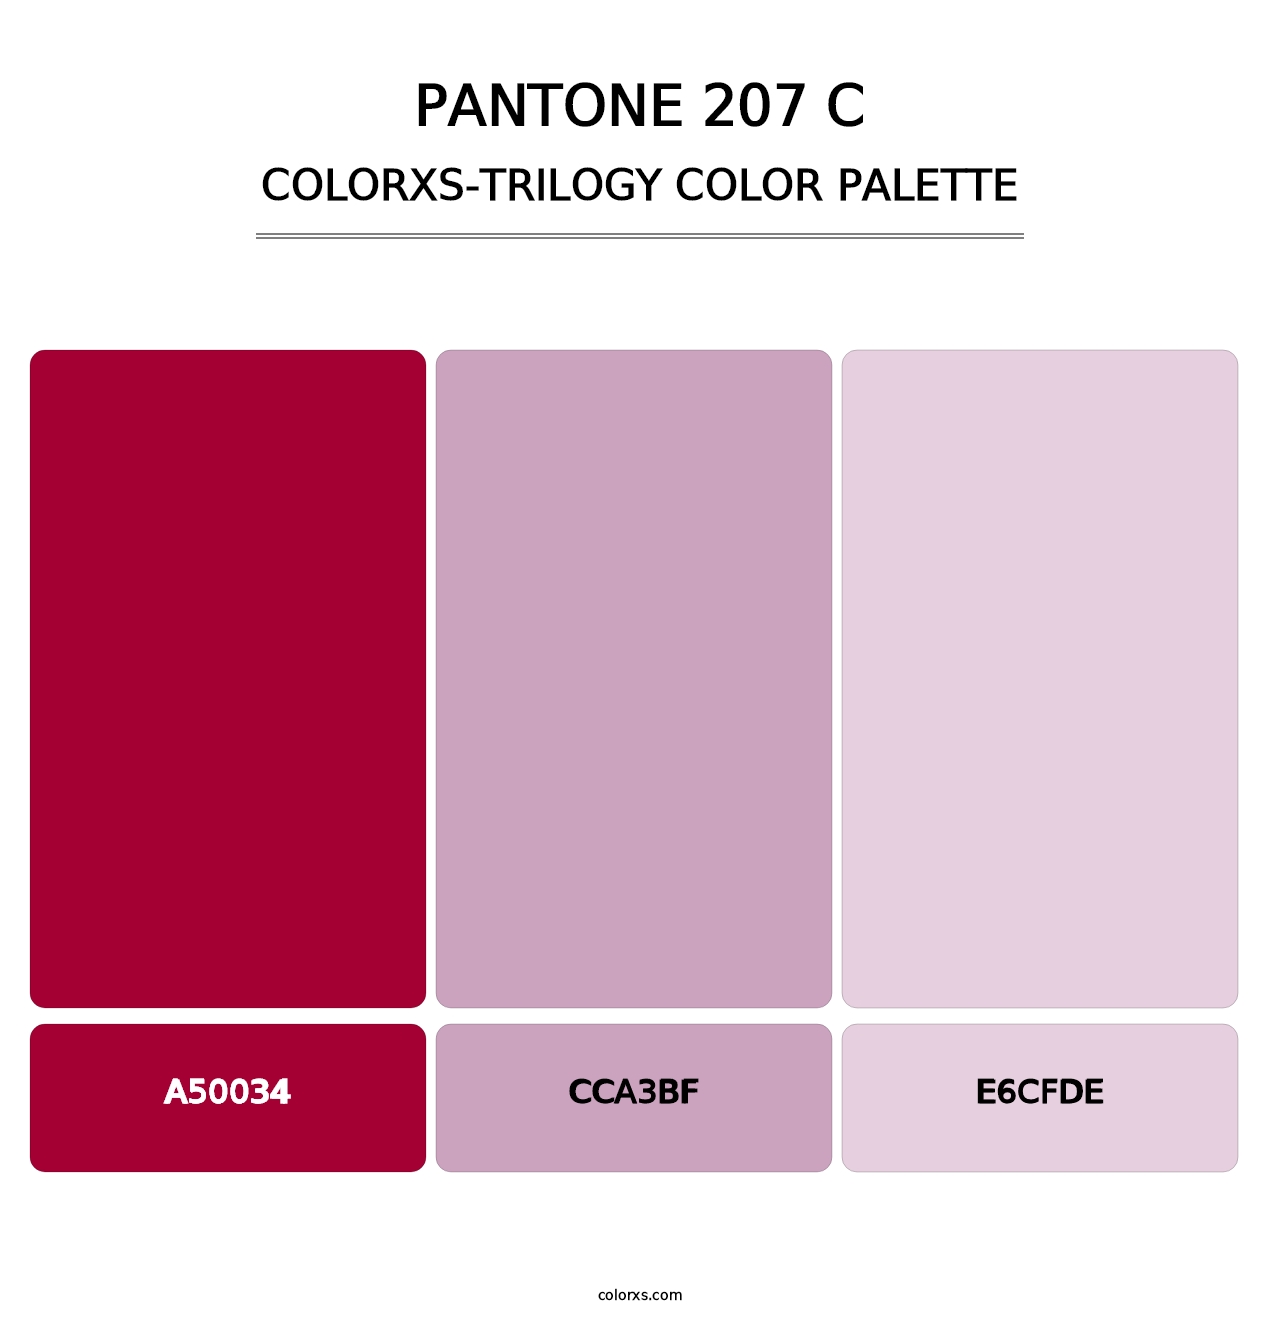 PANTONE 207 C - Colorxs Trilogy Palette